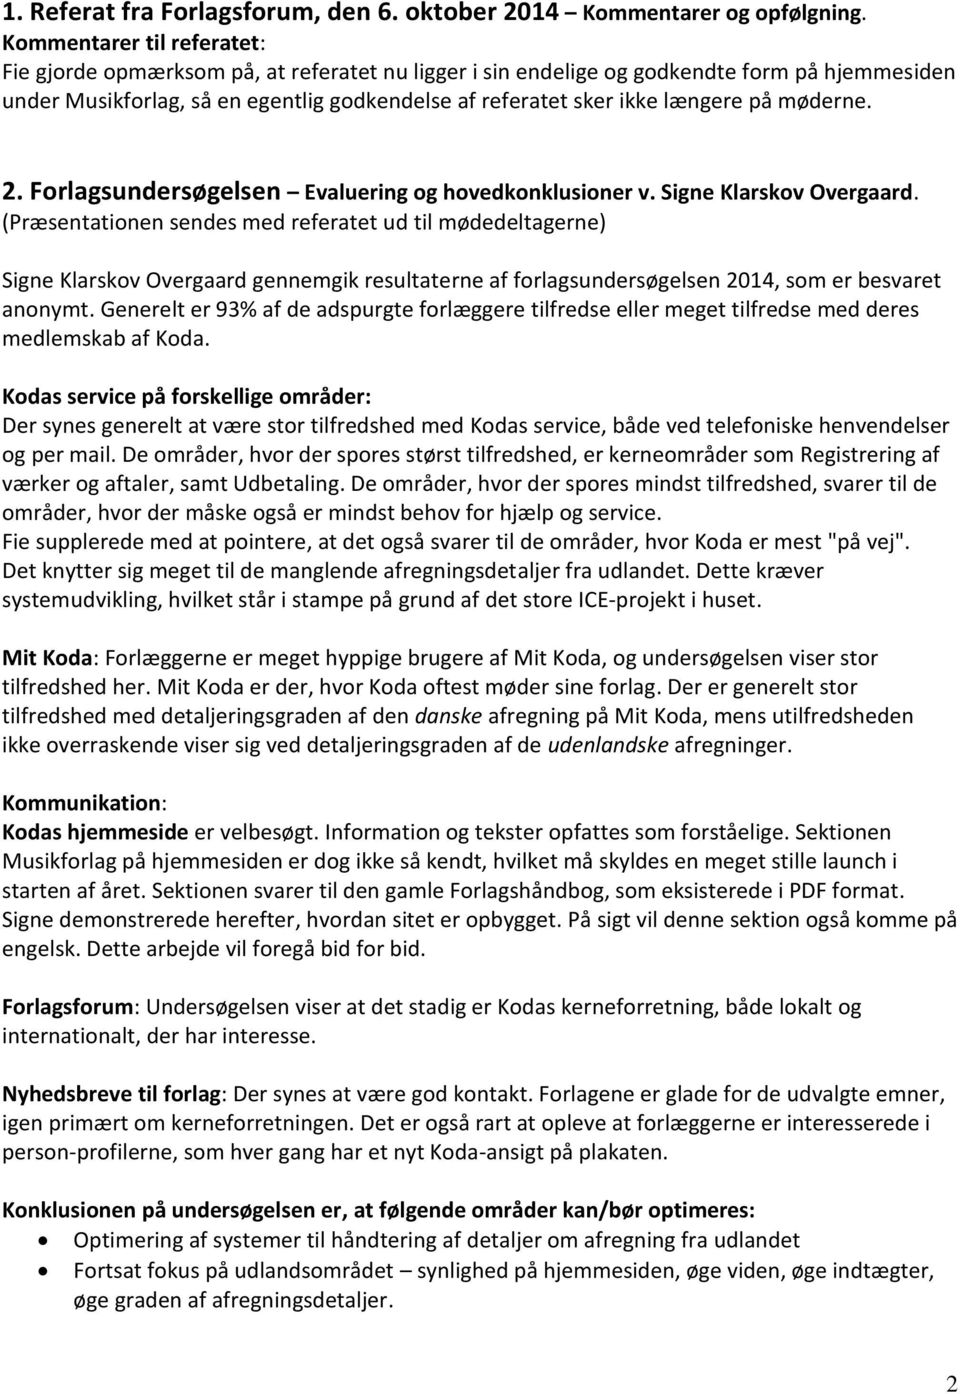 på møderne. 2. Forlagsundersøgelsen Evaluering og hovedkonklusioner v. Signe Klarskov Overgaard.